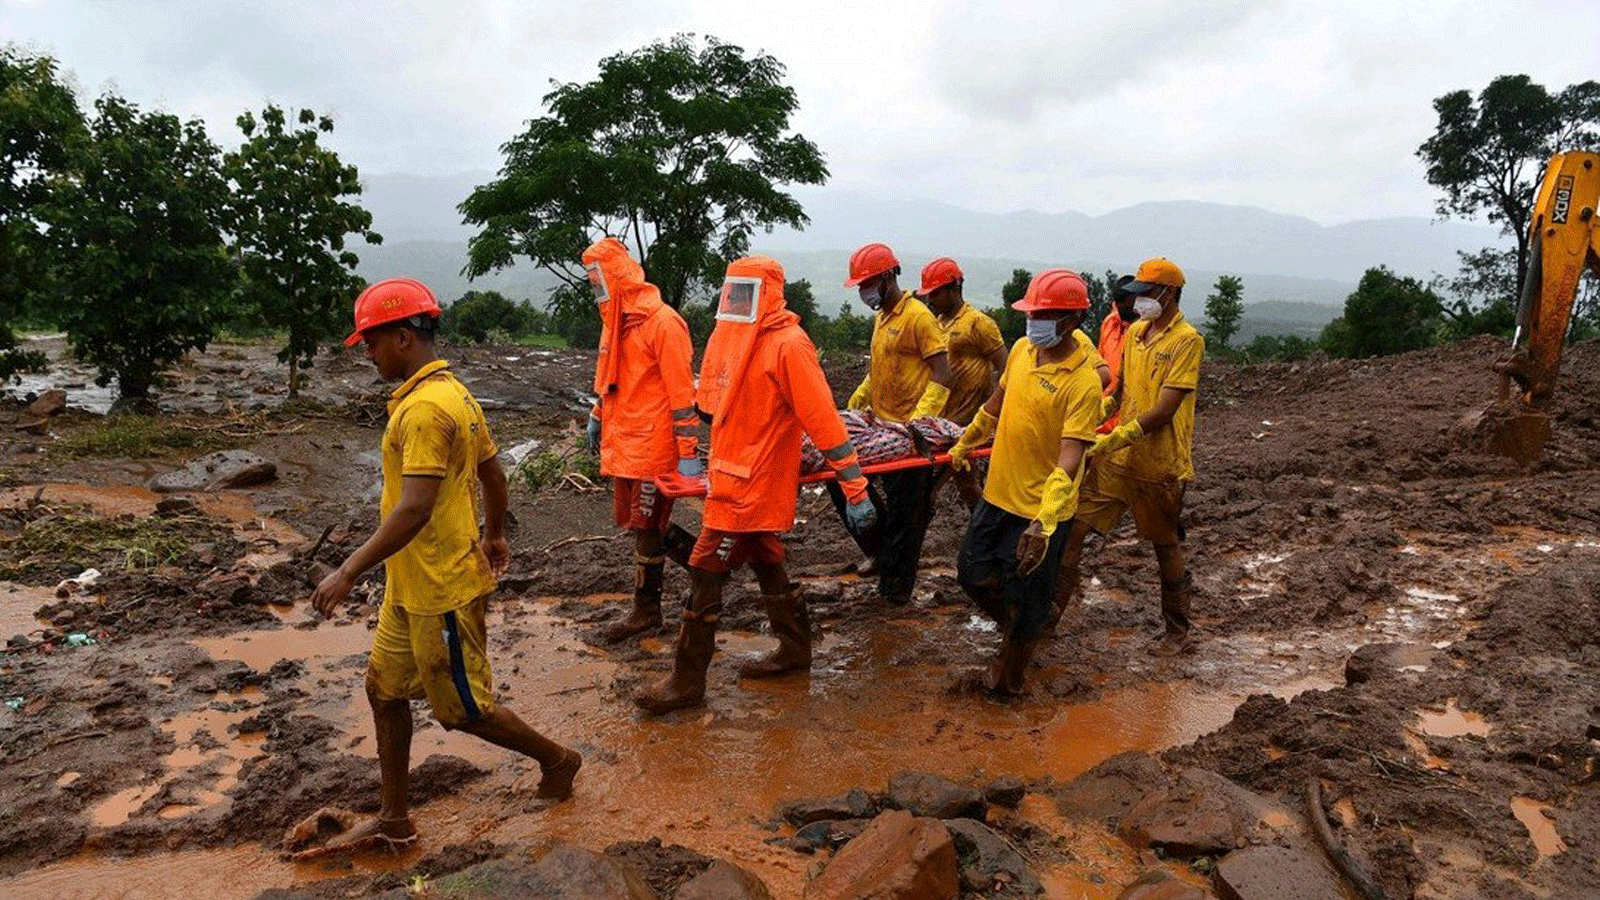 عمال قوة الاستجابة للكوارث المستهدفة (TDRF) يحملون جثة ضحية في موقع انهيار أرضي في تالي، الهند يوم السبت 24 تموز/يوليو 2021